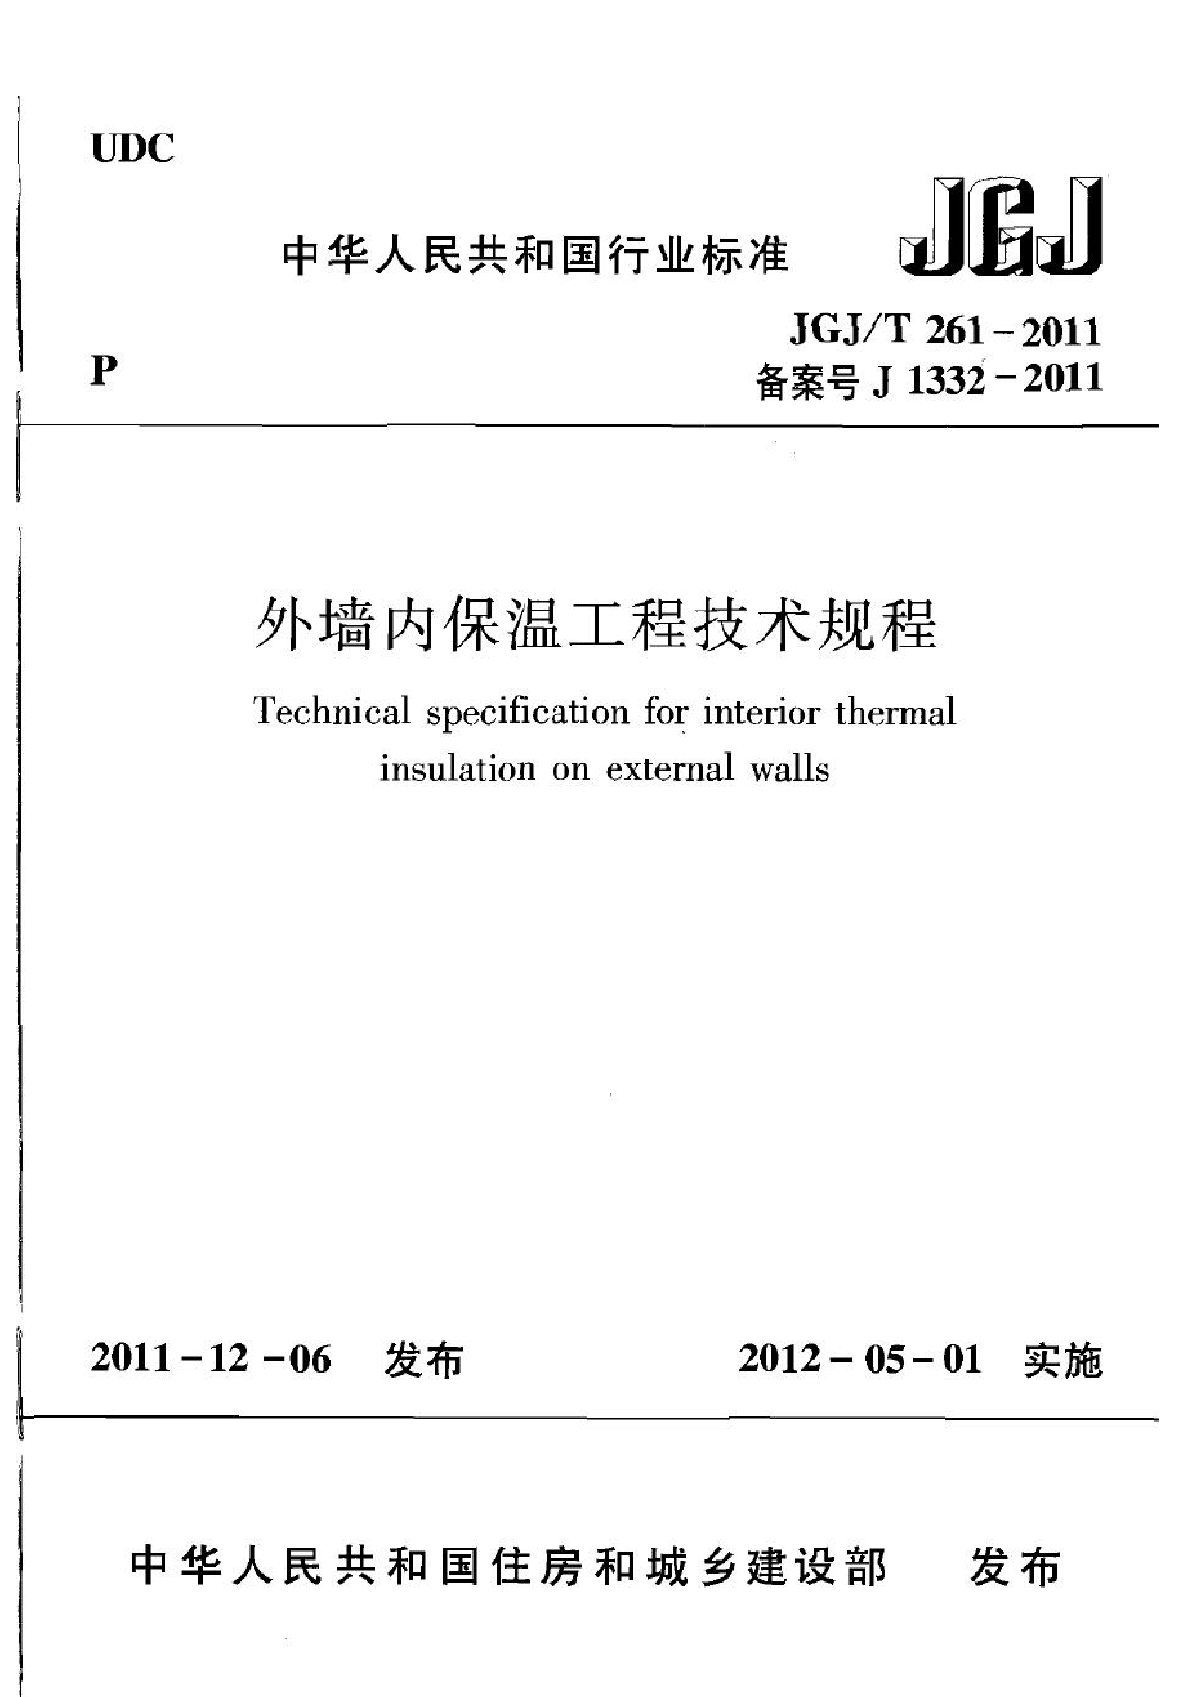 JGJT261-2011外墙内保温工程技术规程